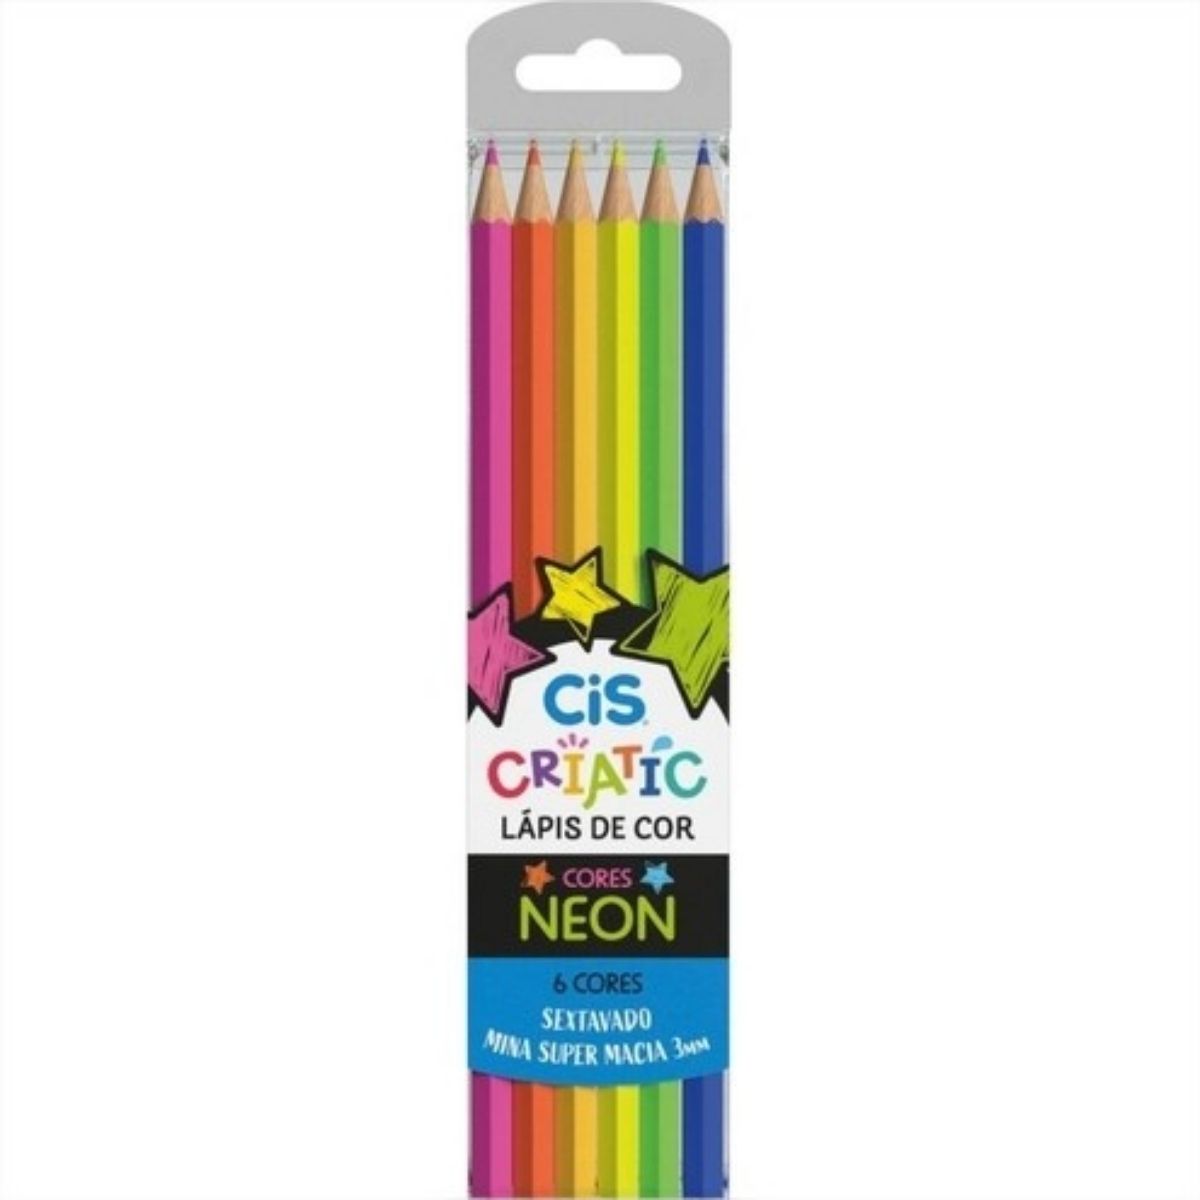 Lápis De Cor Neon 6 Cores Vibrantes Criatic Cis